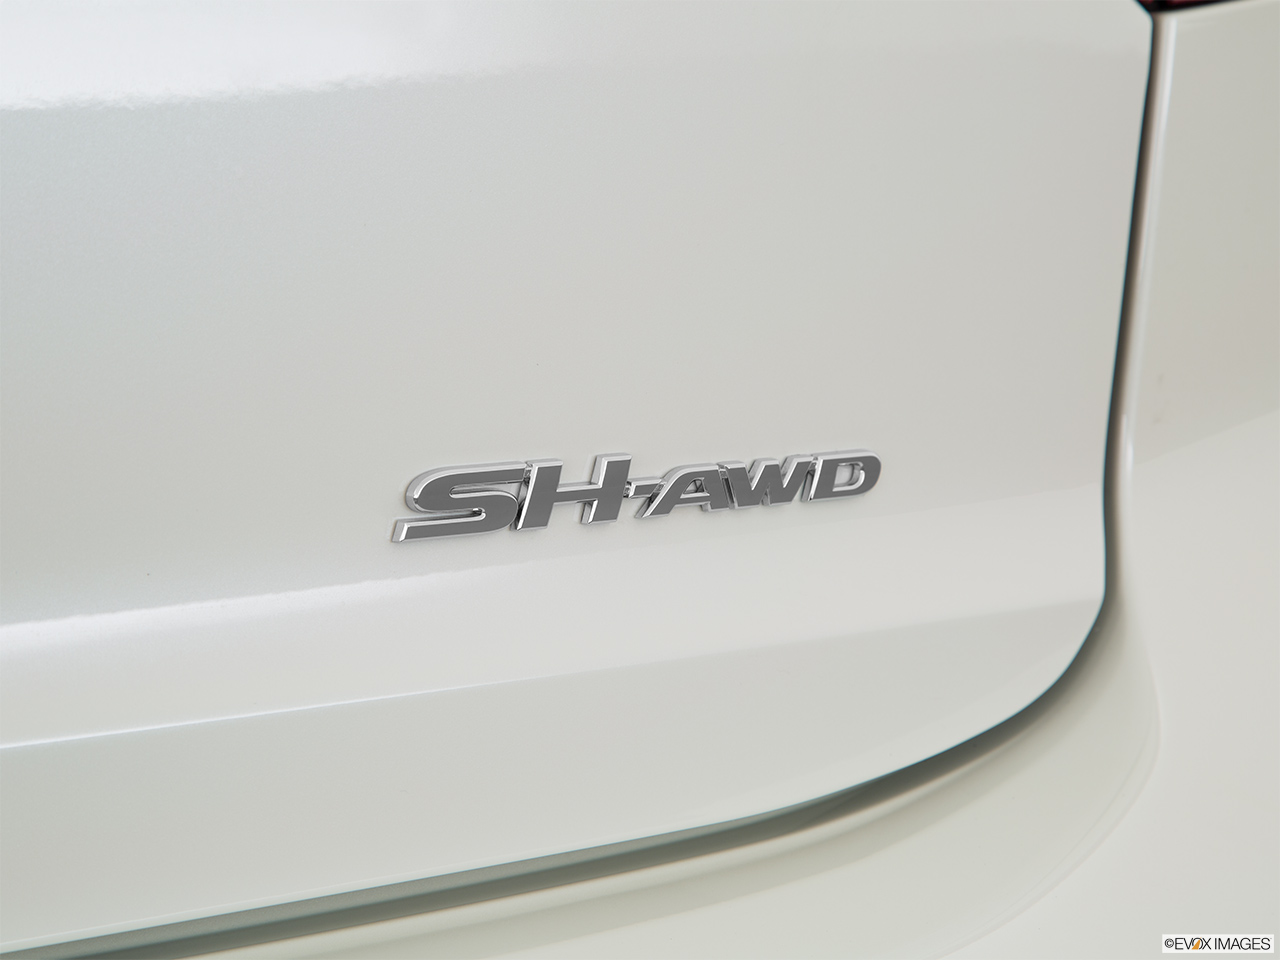 2016 Acura MDX SH-AWD Exterior Bonus Shots (no set spec) 